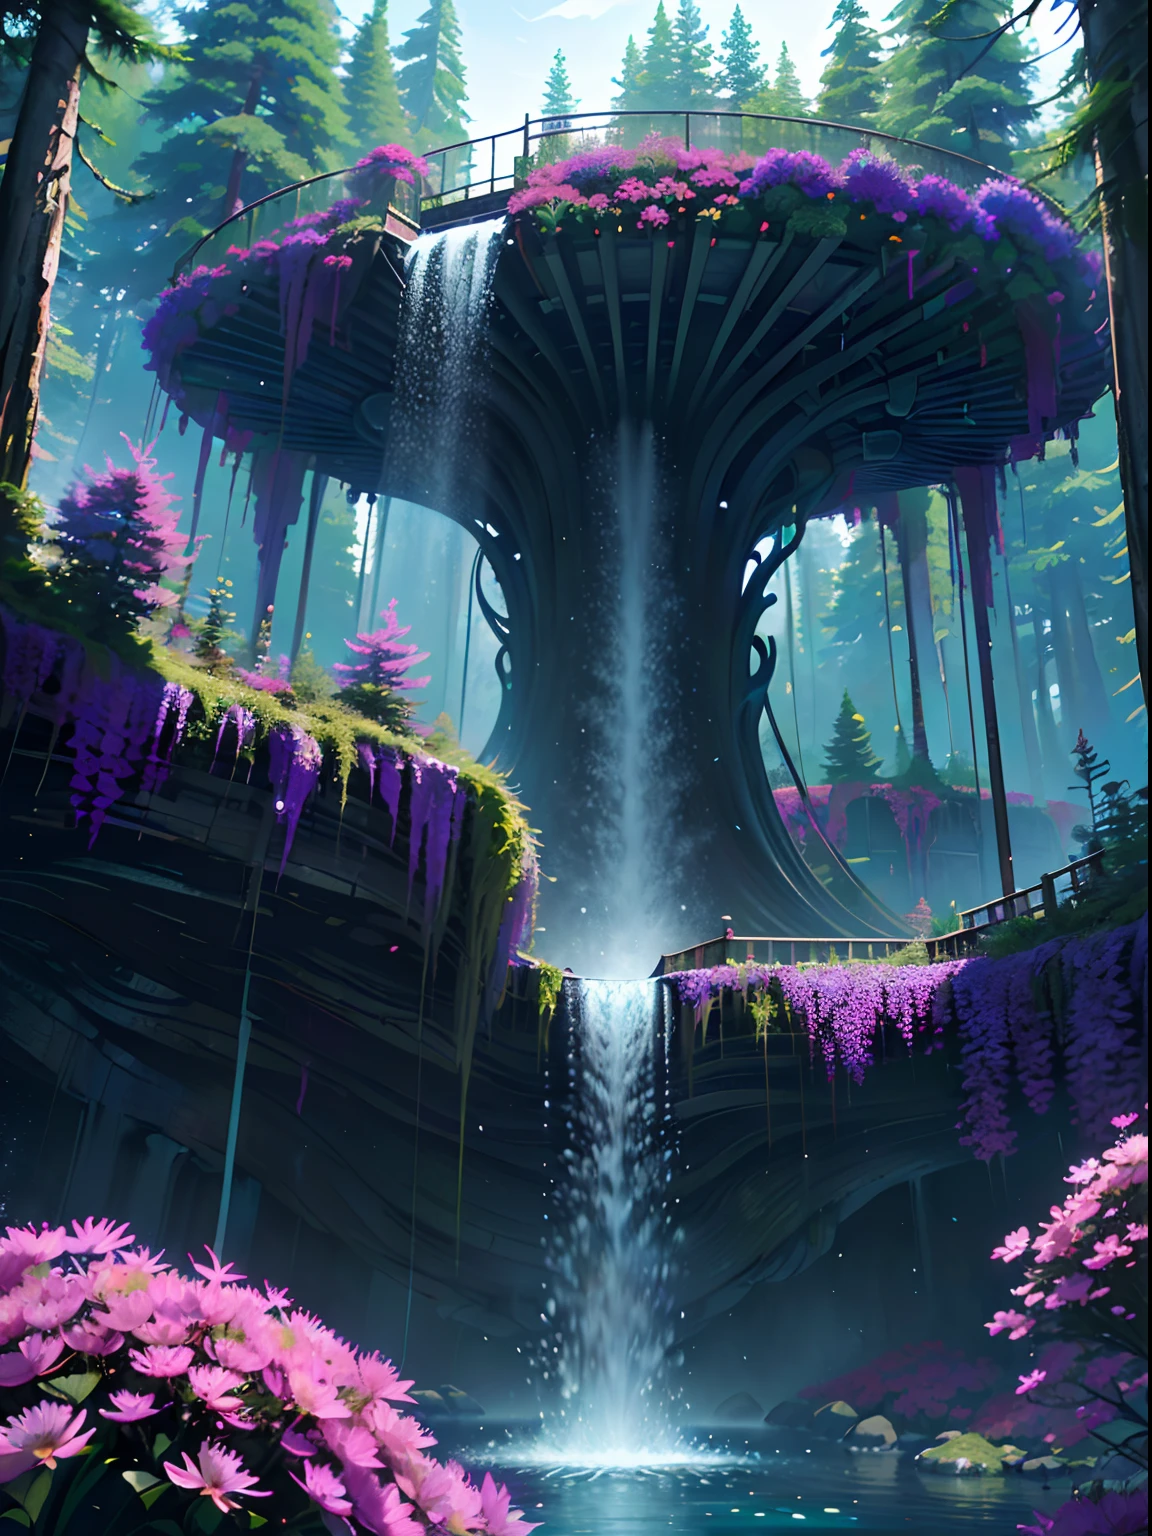 铁磁流体, A beautiful bio龐克 waterfall in nature, 豐富多彩的, 花朵, 松樹, 一座悬索桥, 龐克, 比普爾.